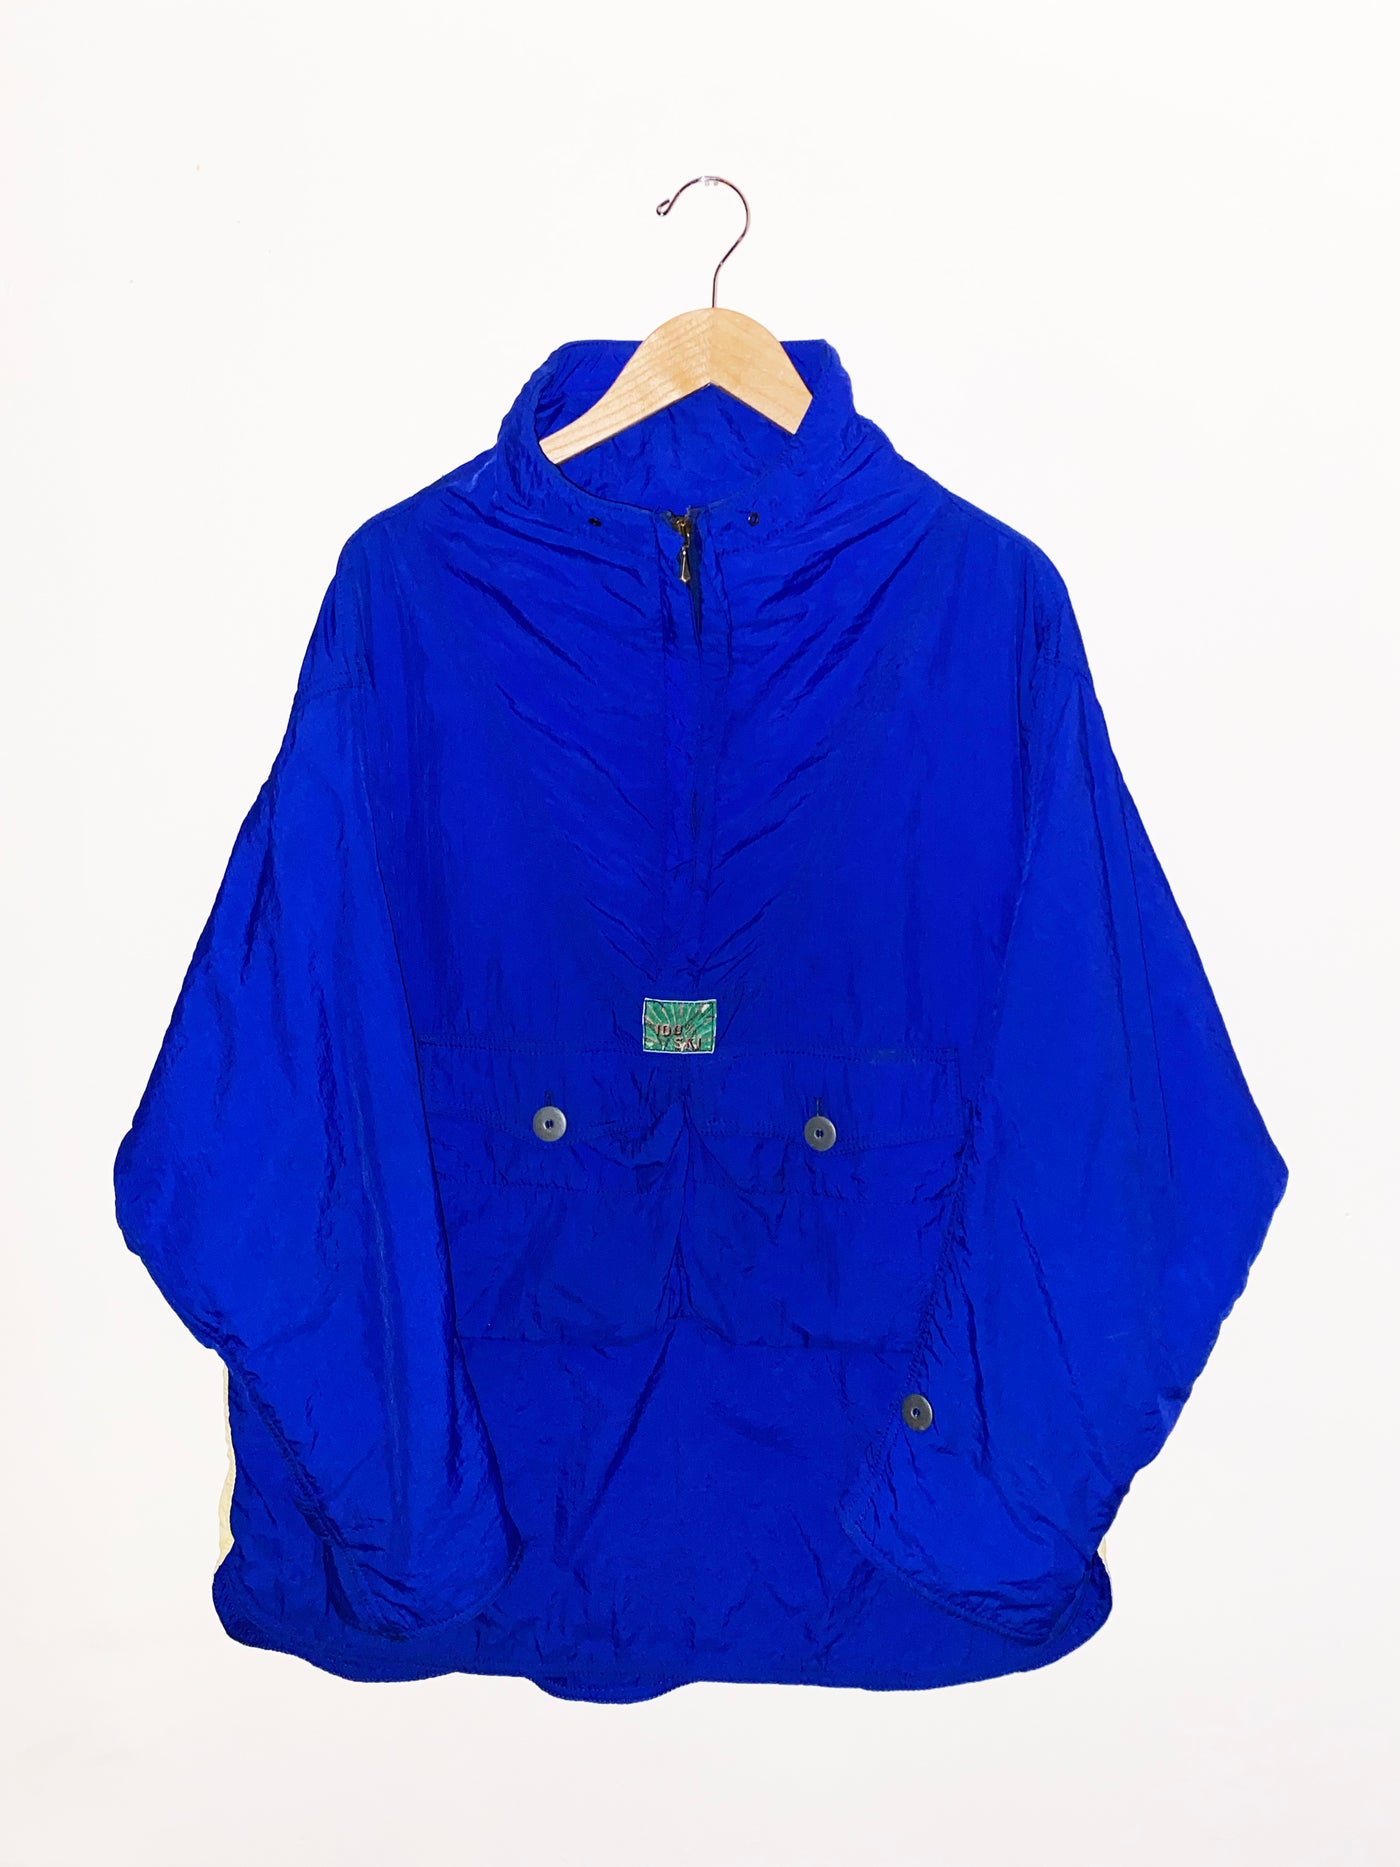 Vintage “100% Ski” 1/4 Zip Jacket